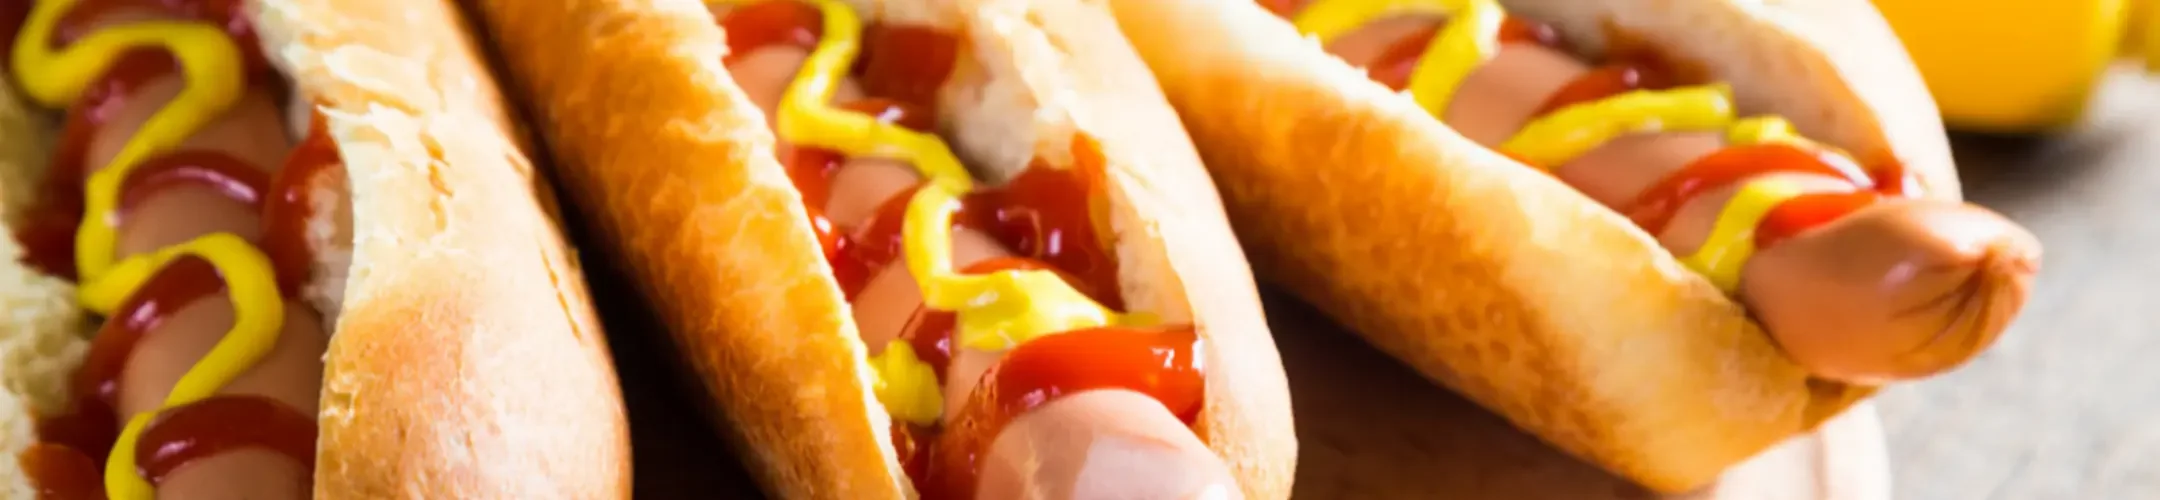 Hot Dogs mit Ketchup und Senf